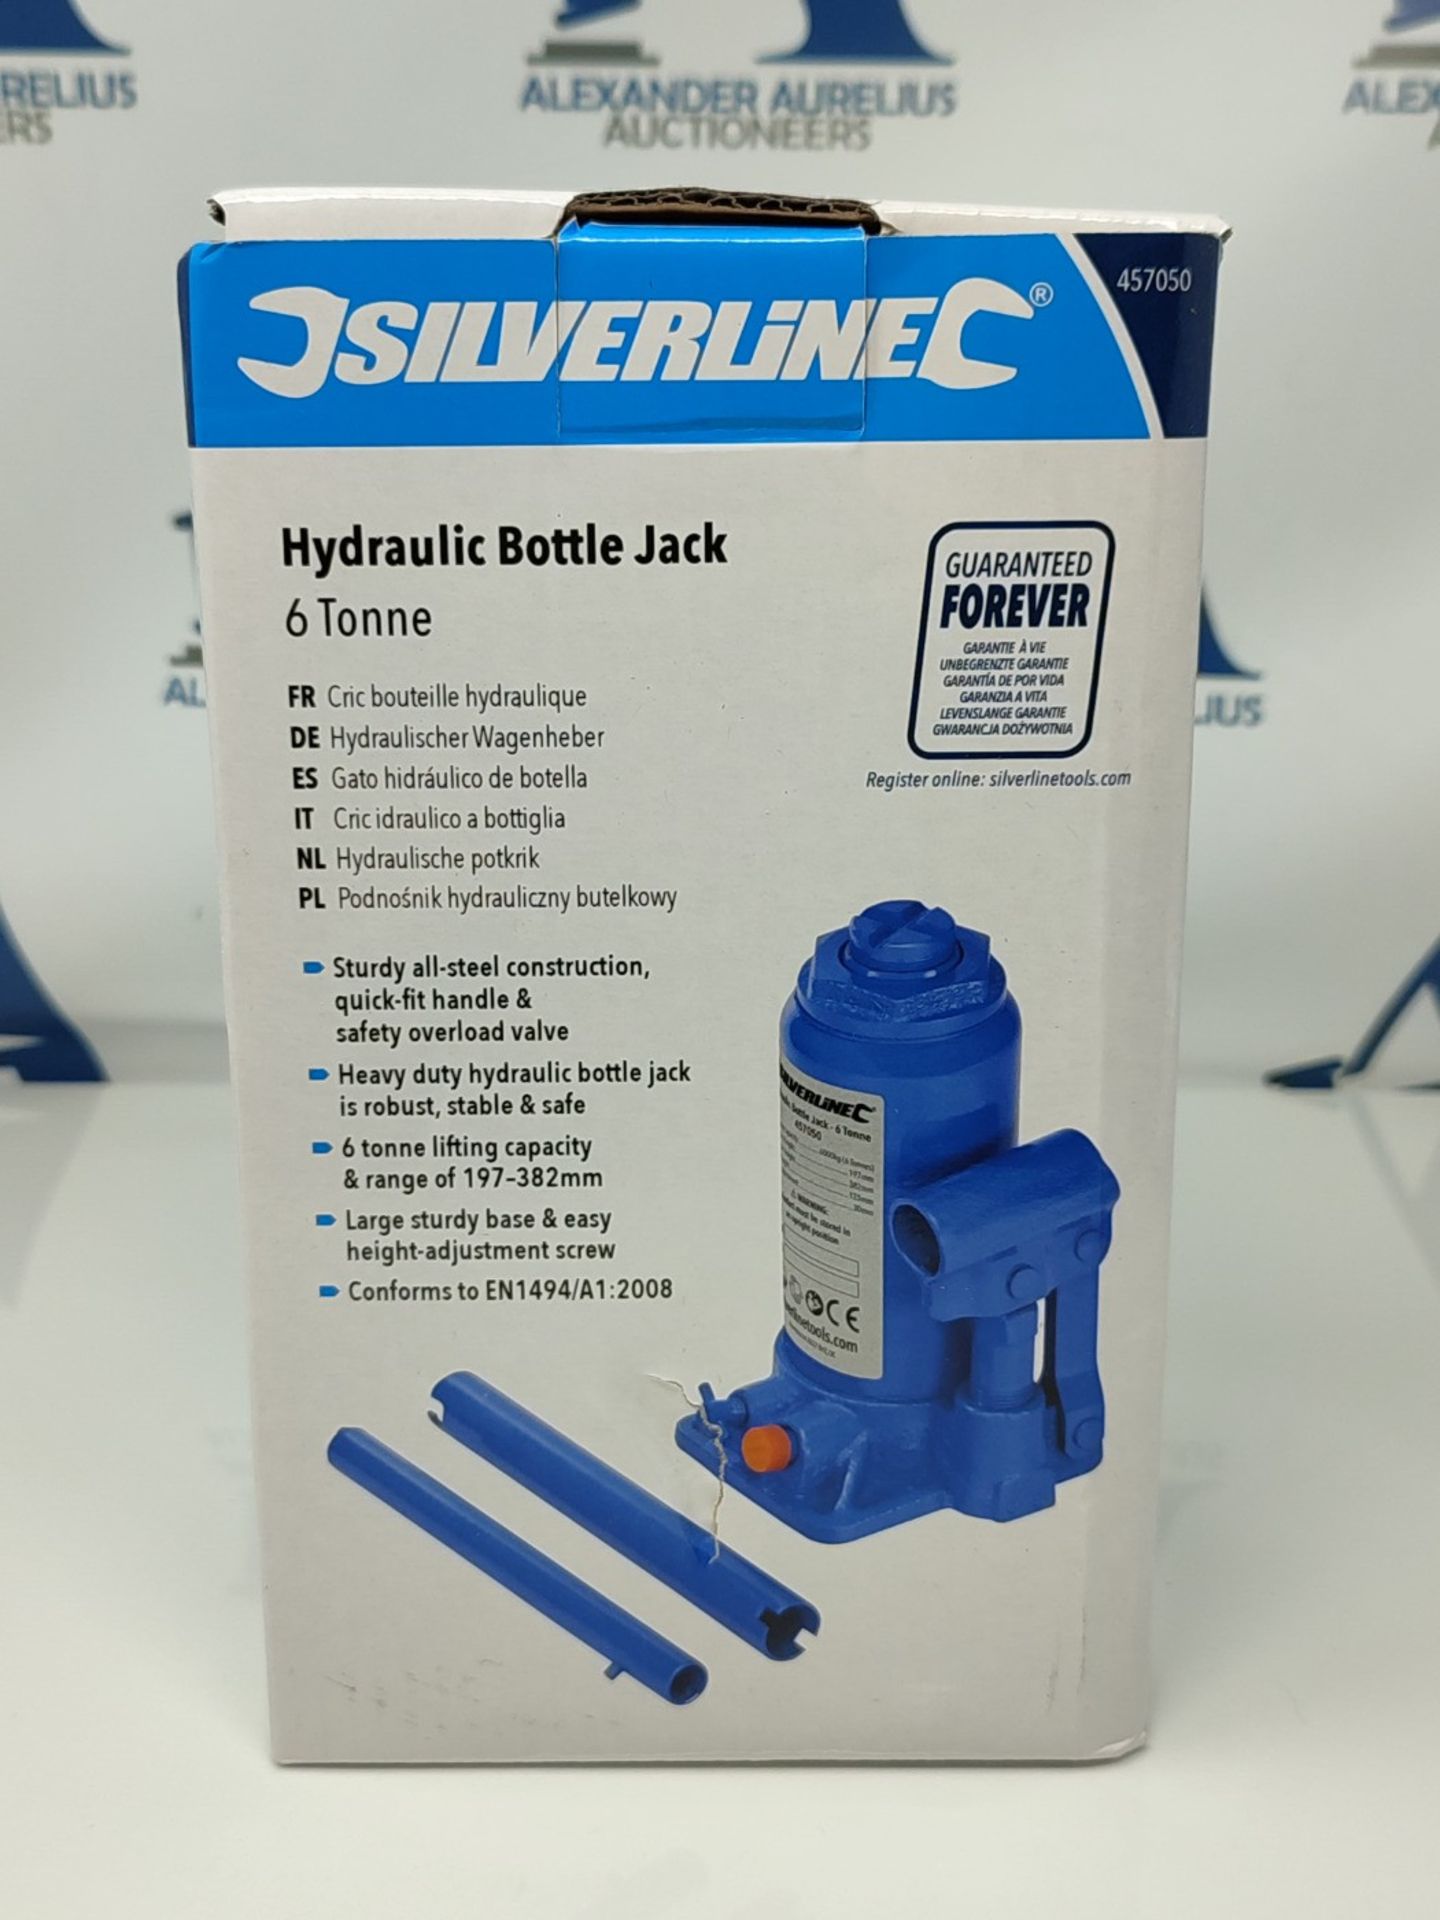 Silverline Hydraulic Bottle Jack 6 Tonne (457050)